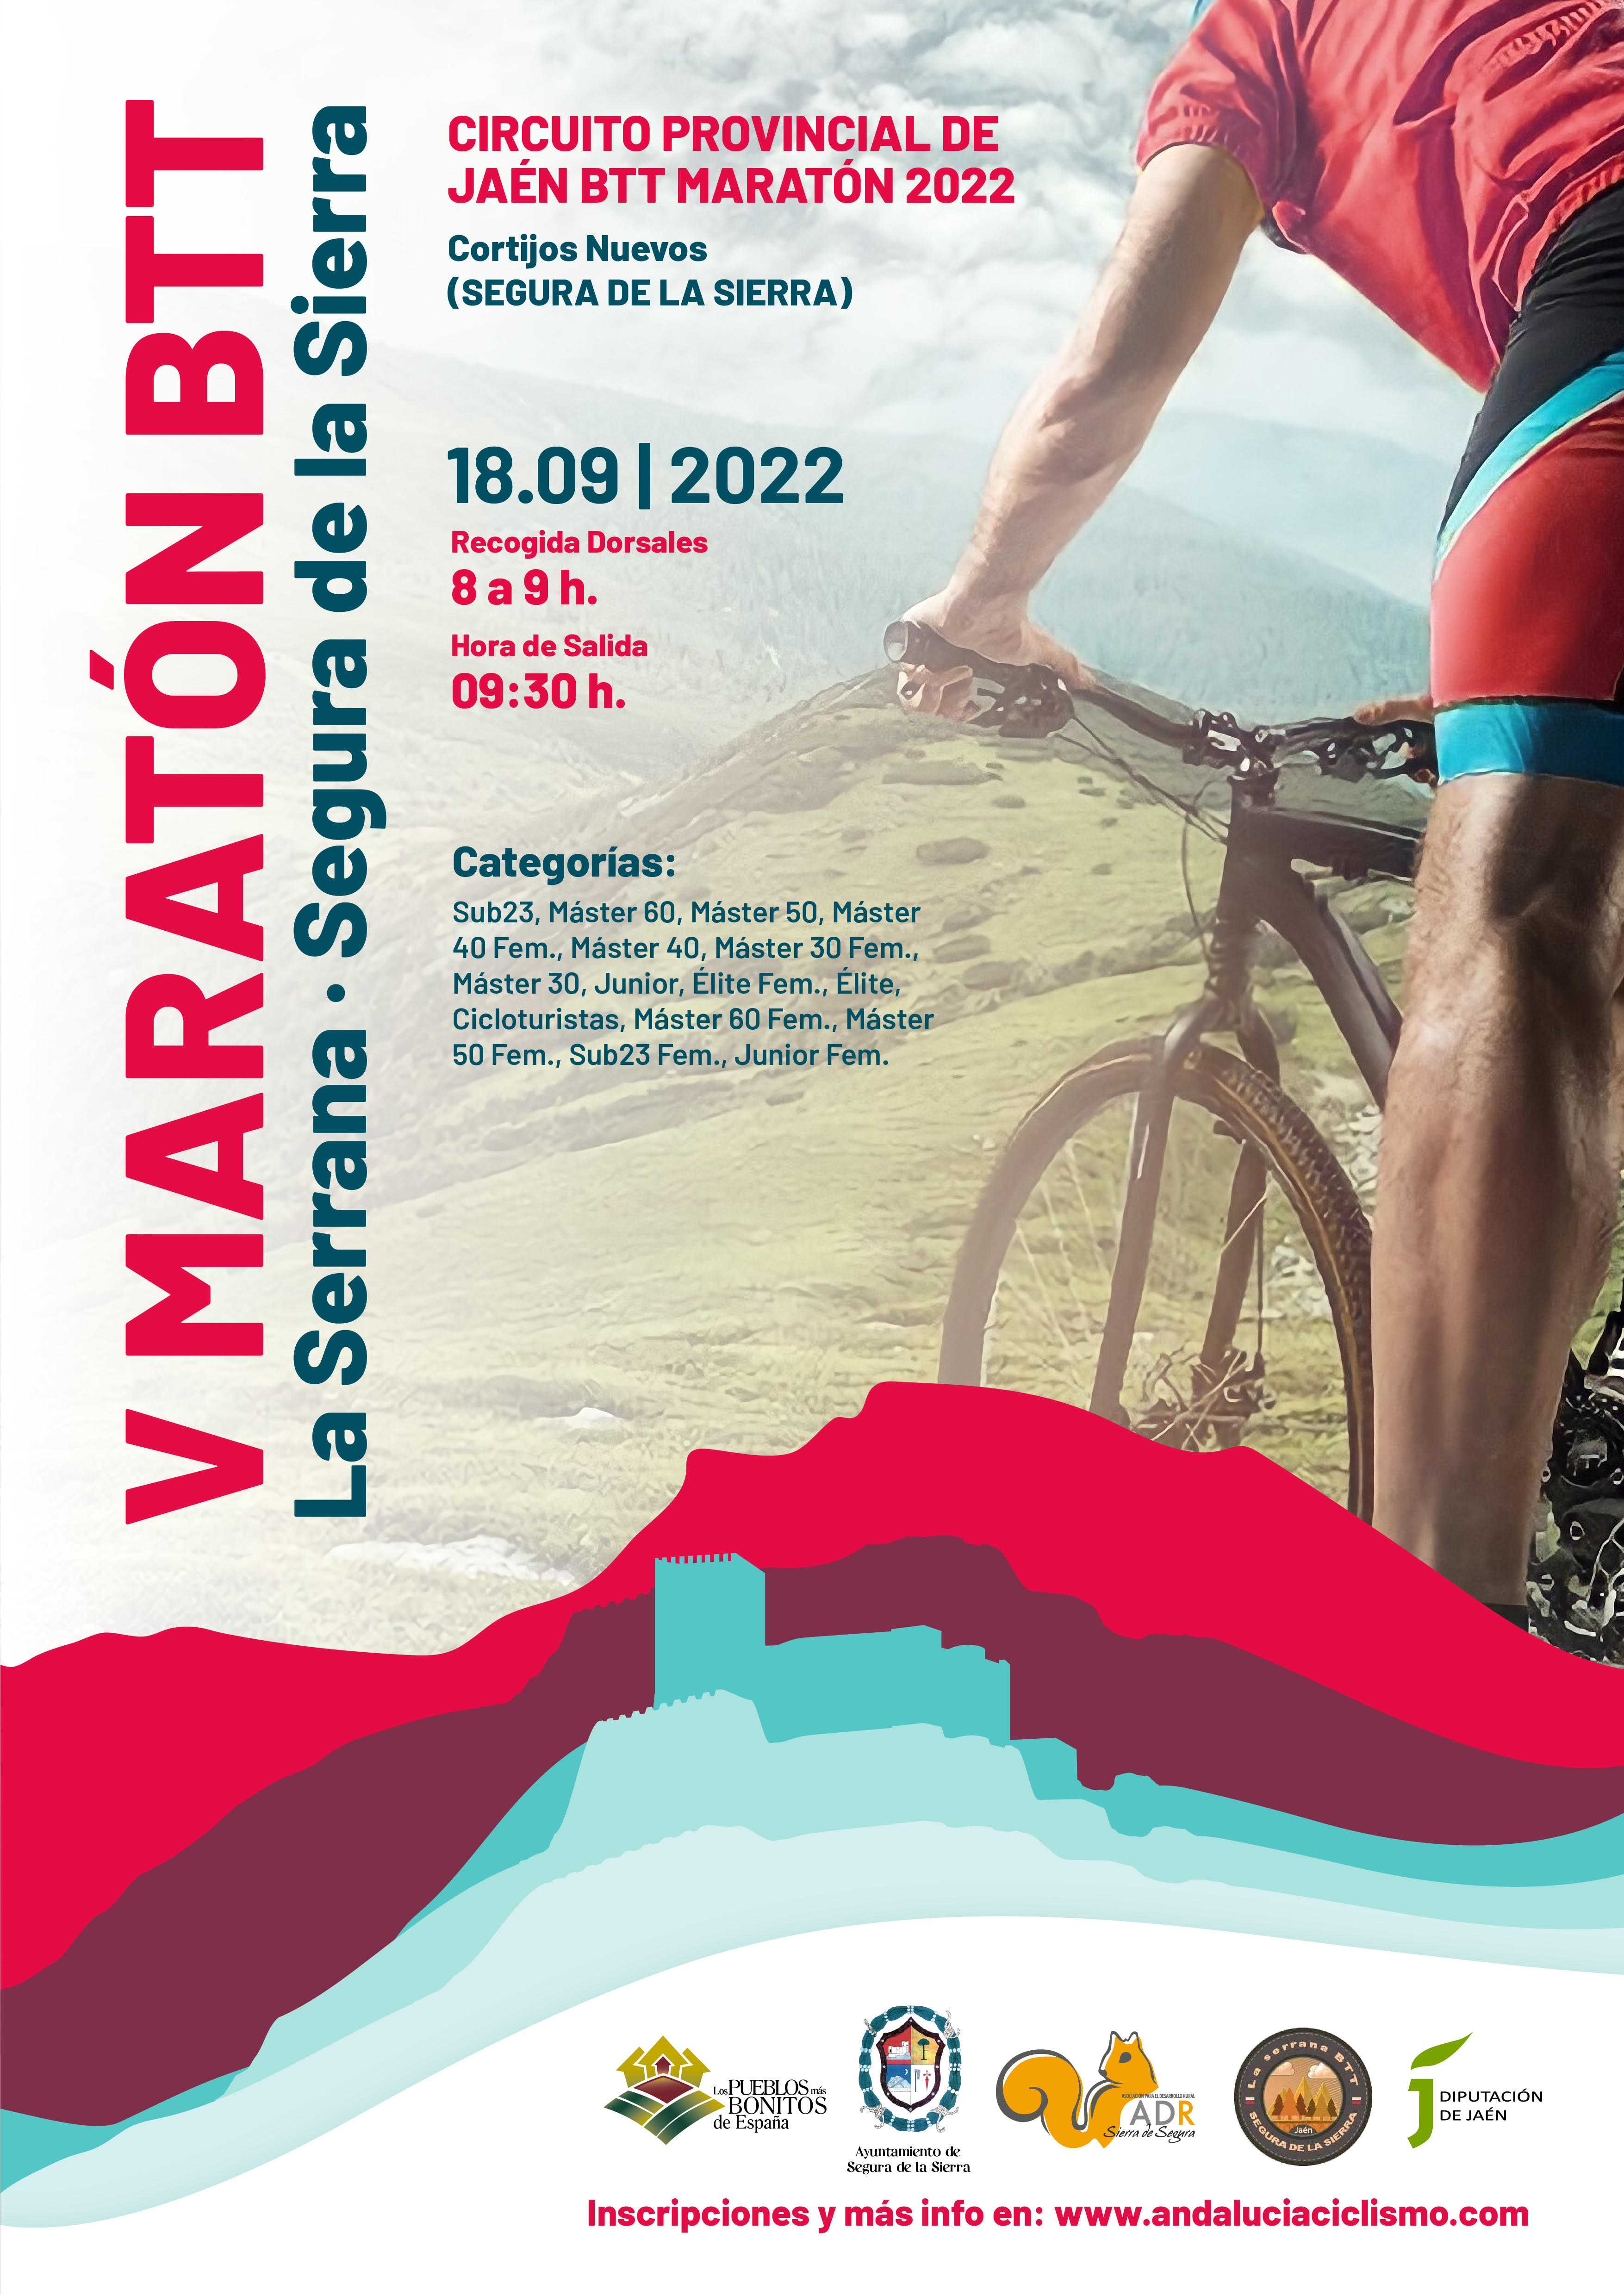 ‘La Serrana’ pondrá una marcha más al Circuito Jaén BTT Maratón 2022